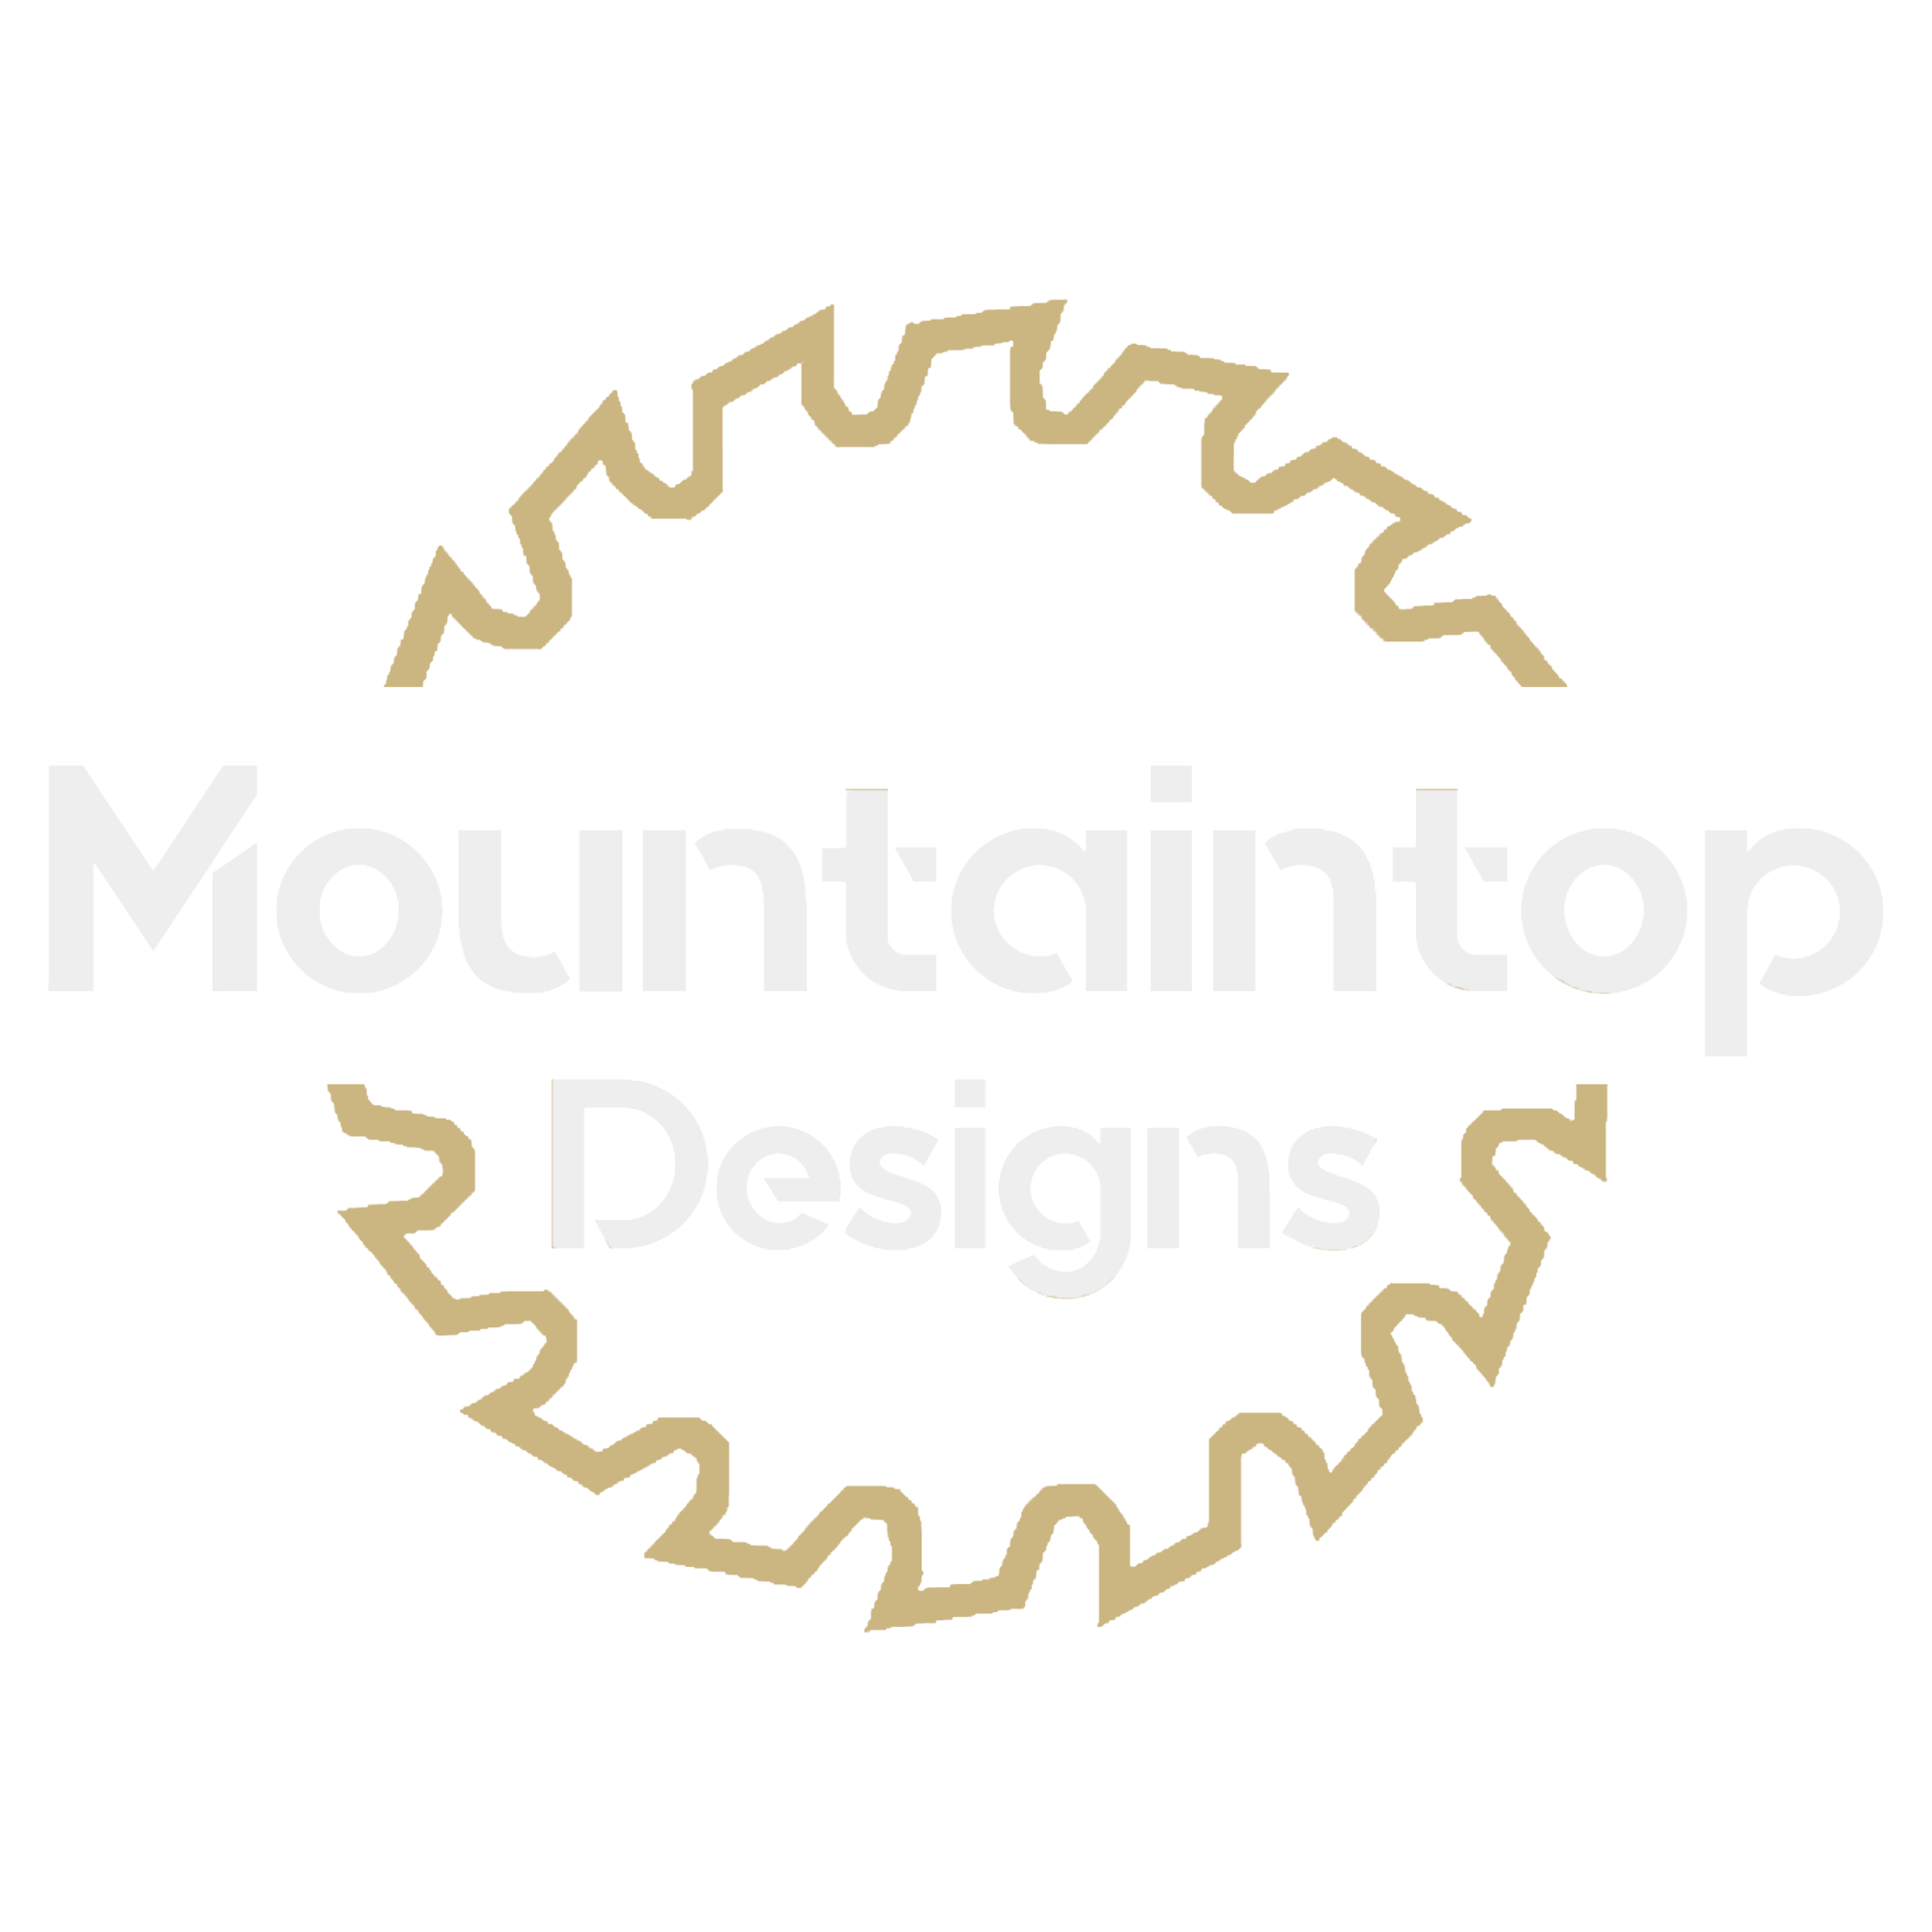 Mountaintop Designs